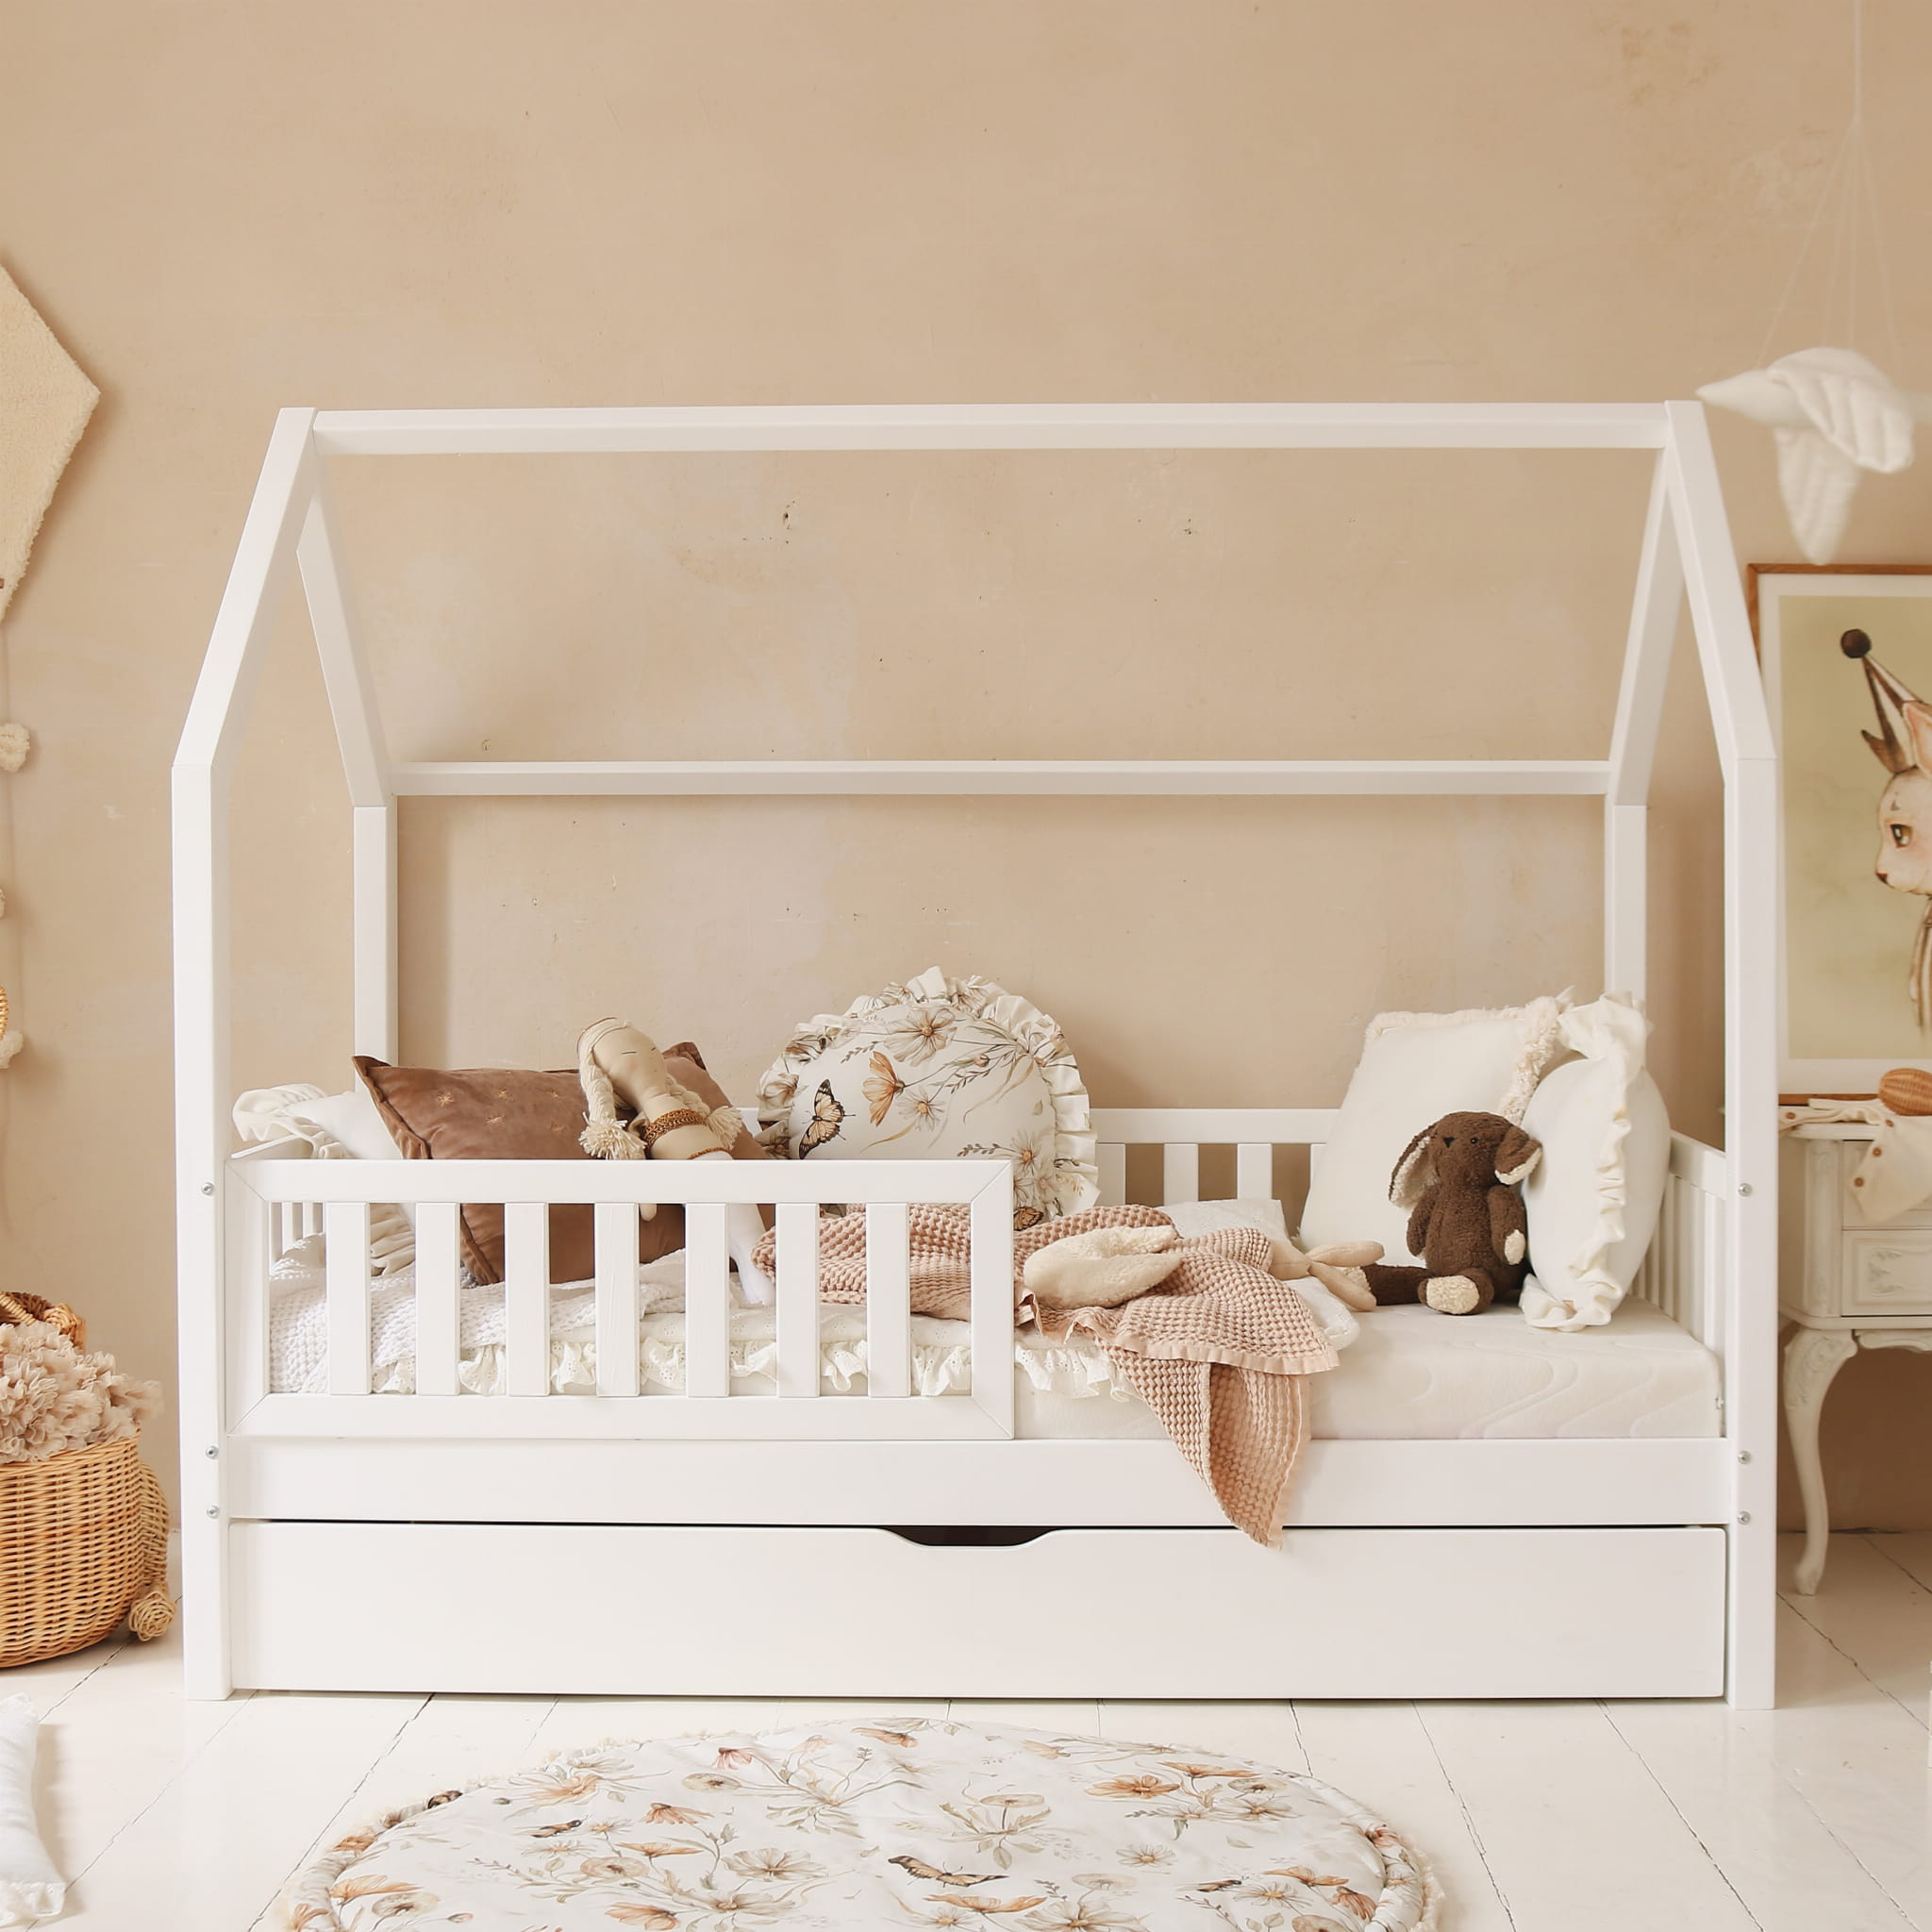 Hussäng Bianca vit 90x190 cm med extra säng En vit hussäng med sidoskydd och extrasäng till barnrummet